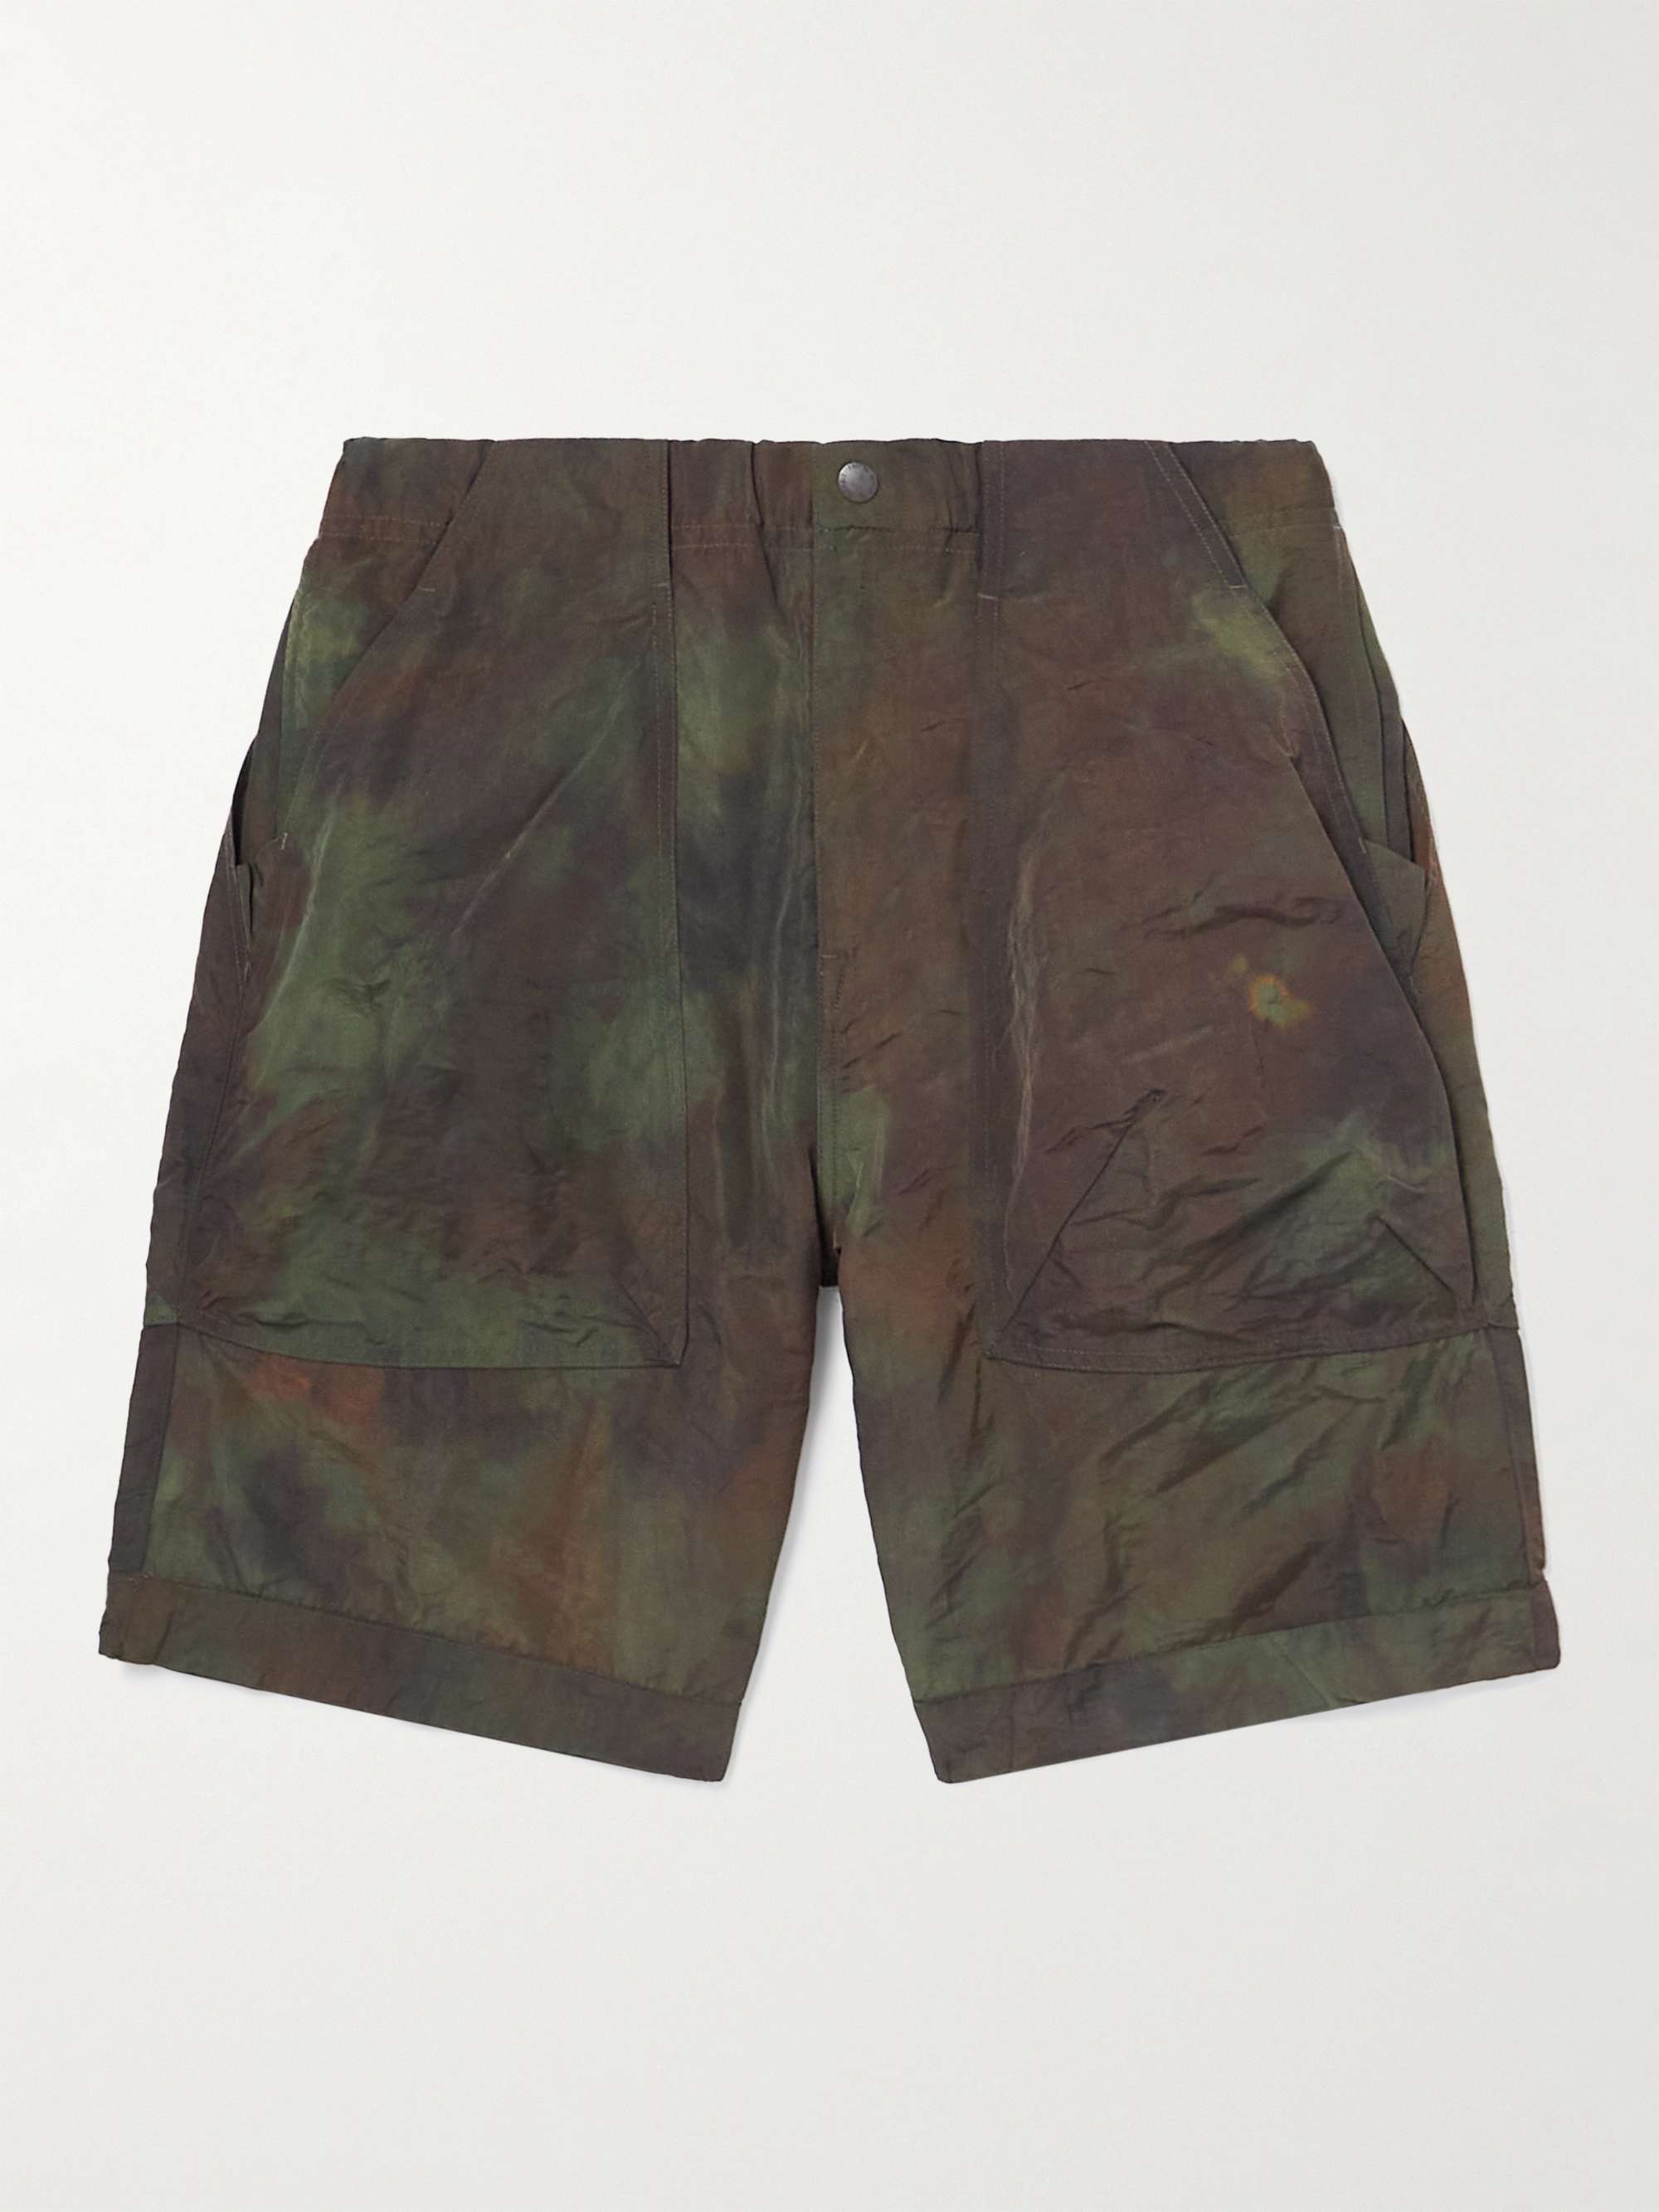 NORBIT BY HIROSHI NOZAWA Straight-Leg Crinkled Tie-Dye Nylon Cargo Shorts